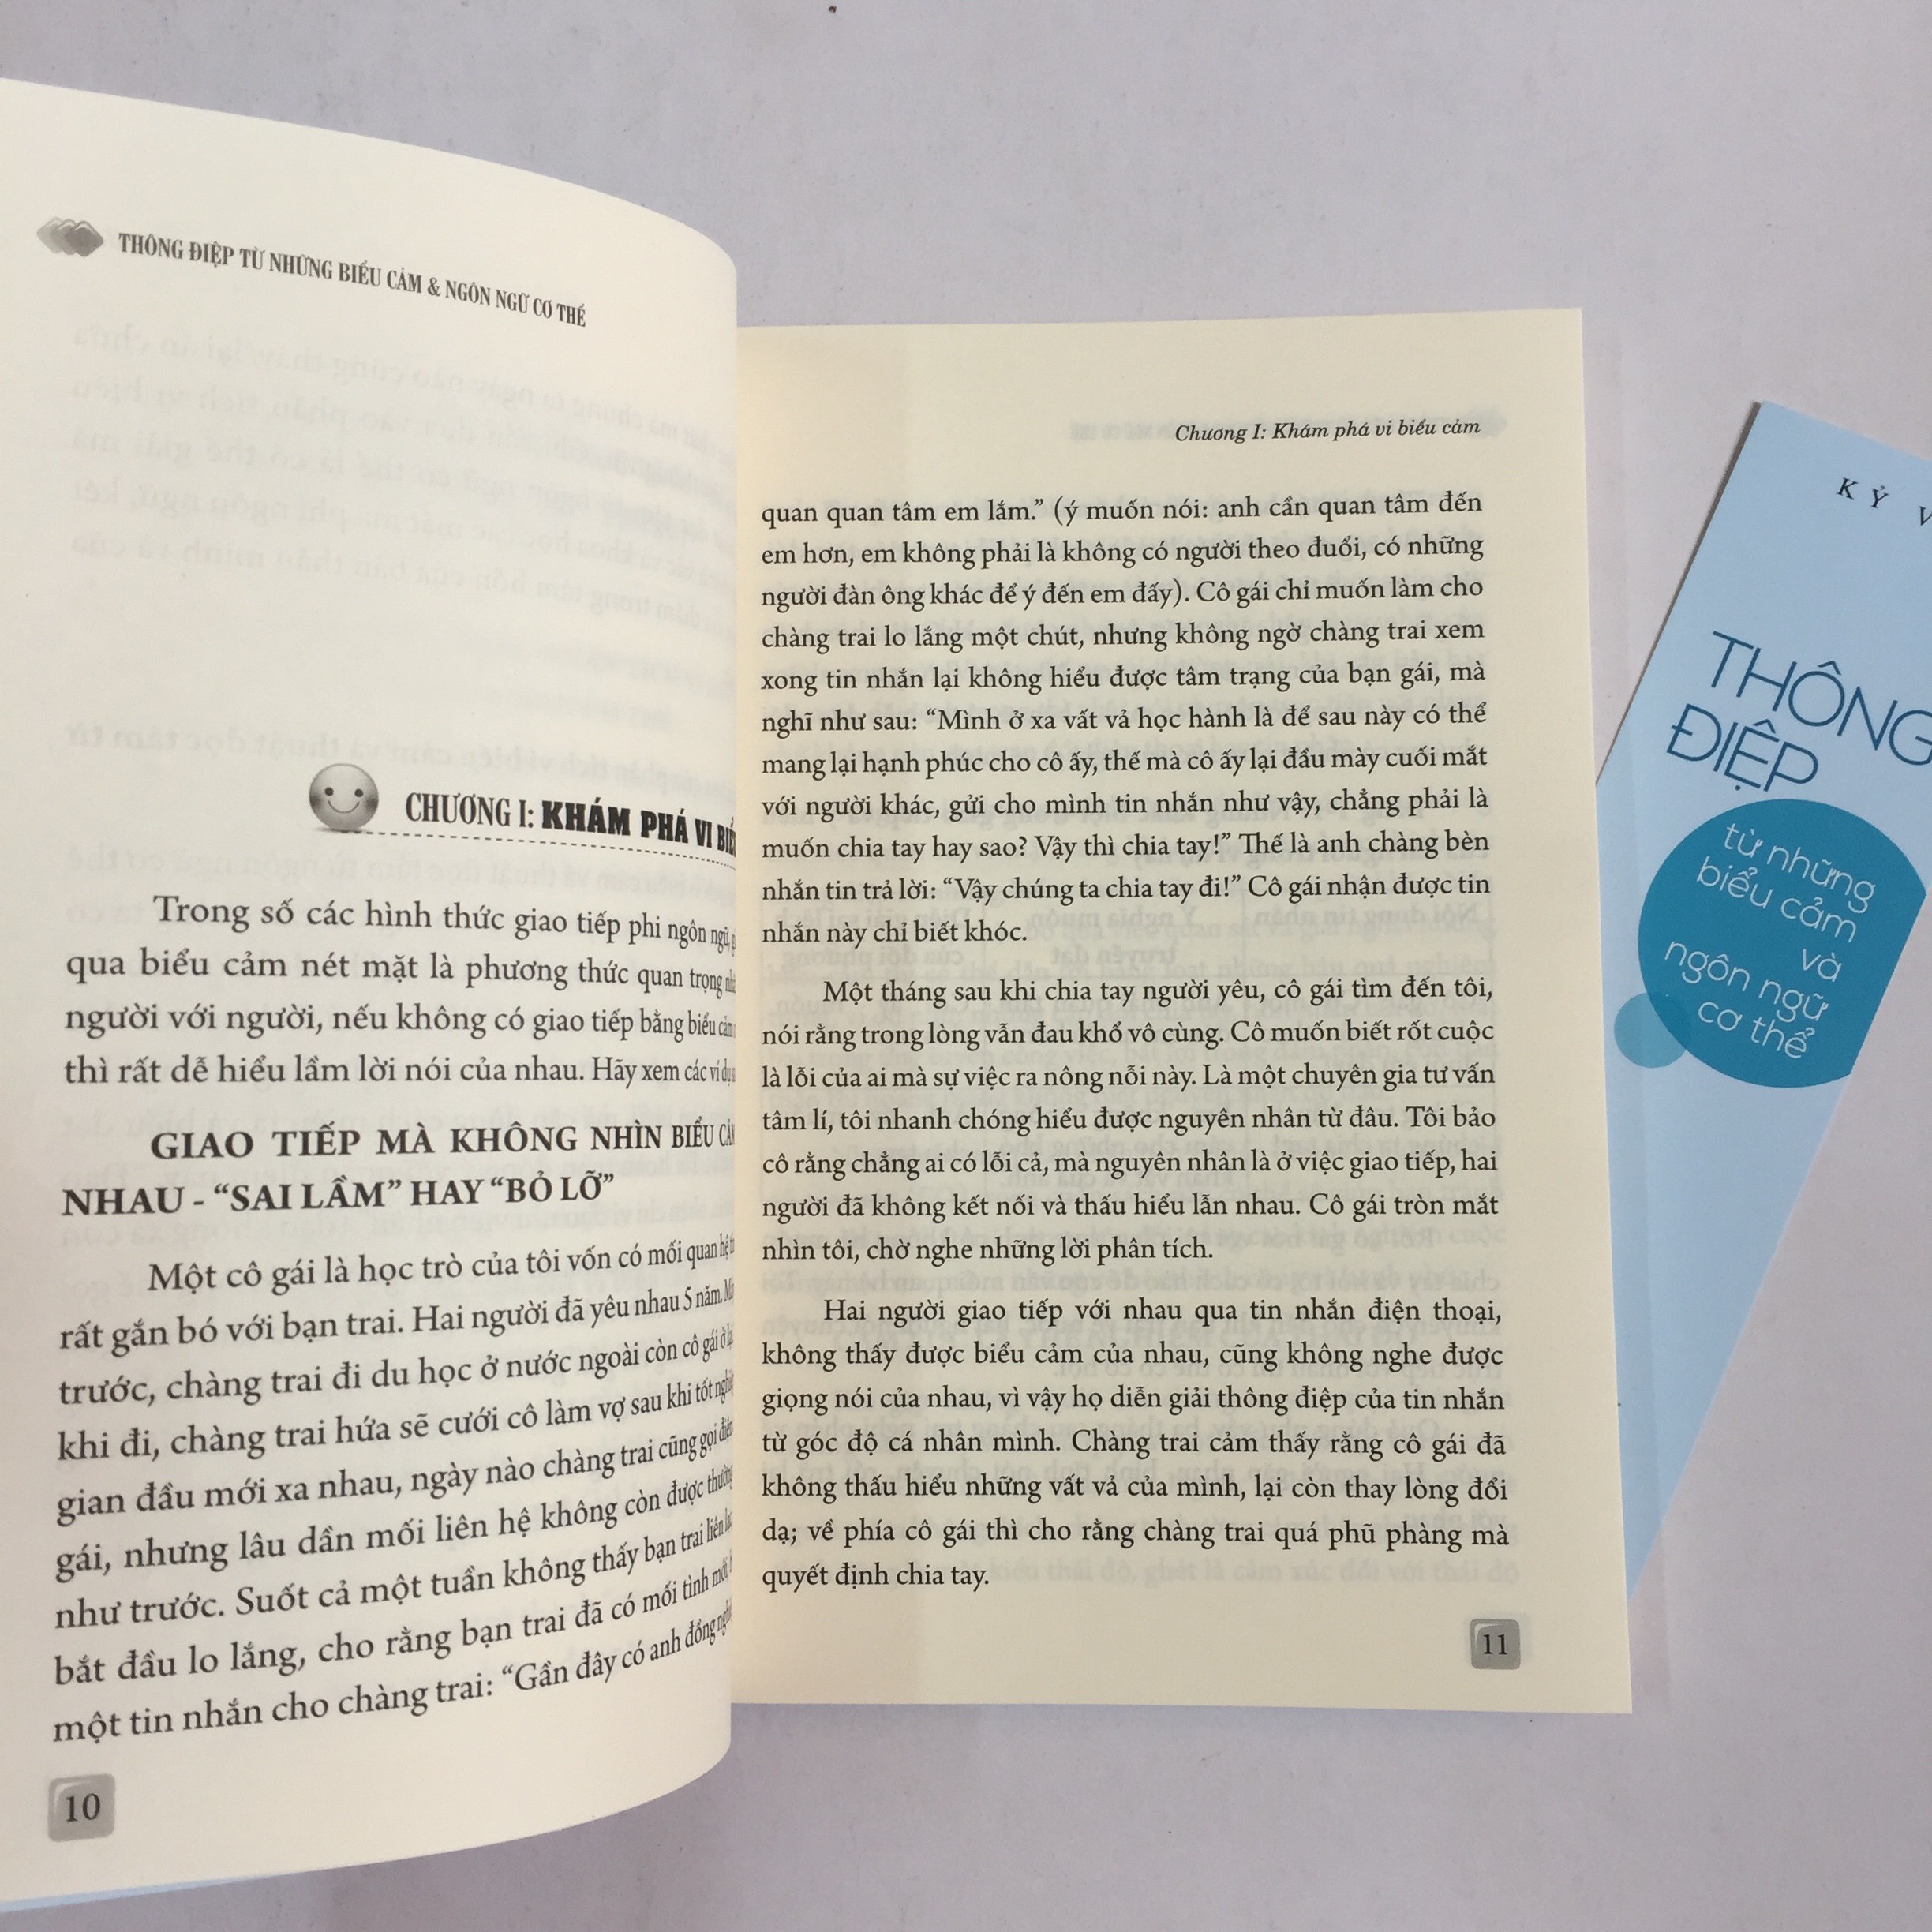 Combo 2 cuốn: Bí Quyết Đọc Tâm - Thấu Hiểu Người Khác Chỉ Trong Giây Lát + Thông Điệp Từ Những Biểu Cảm Và Ngôn Ngữ Cơ Thể + Sức Mạnh Của Những Thay Đổi Tâm Lý Tinh Tế (có bookmark)